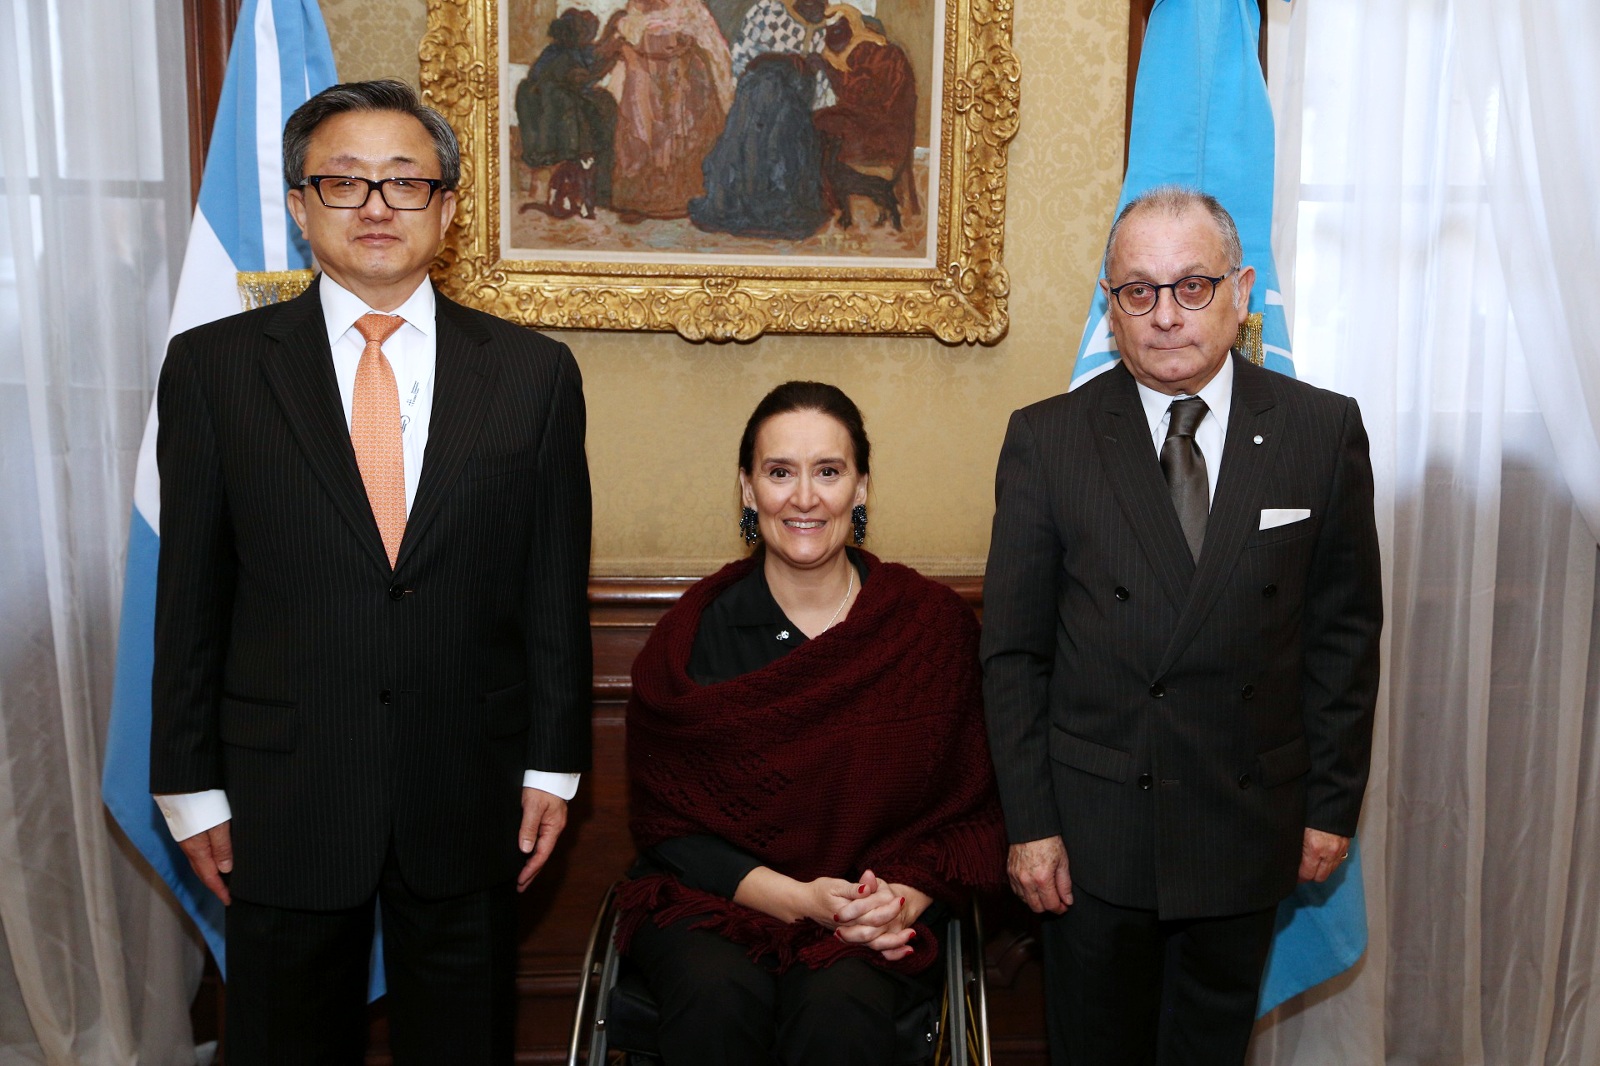 La Agenda 2030 es para la Argentina el horizonte hacia el cual orientamos nuestra cooperación internacional”